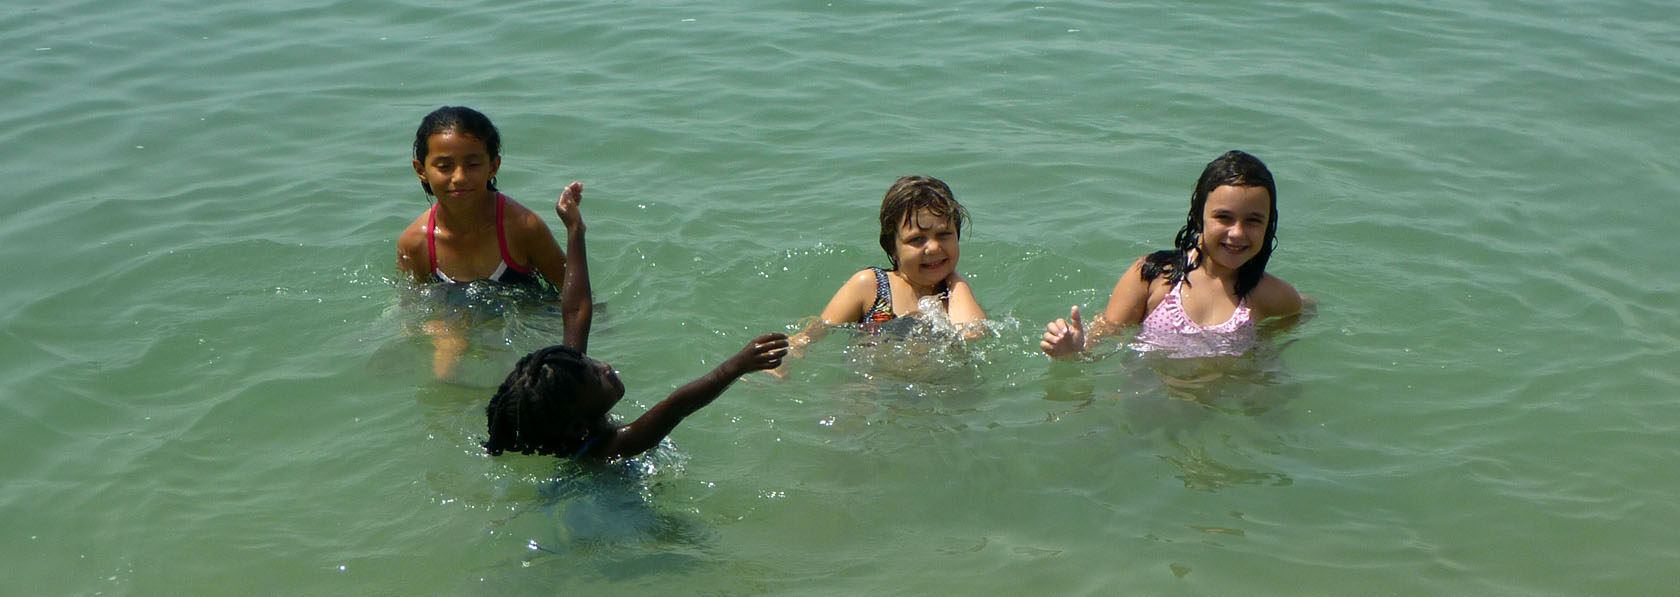 baignade sans danger avec les enfants qui jouent sous la surveillance de leurs parents